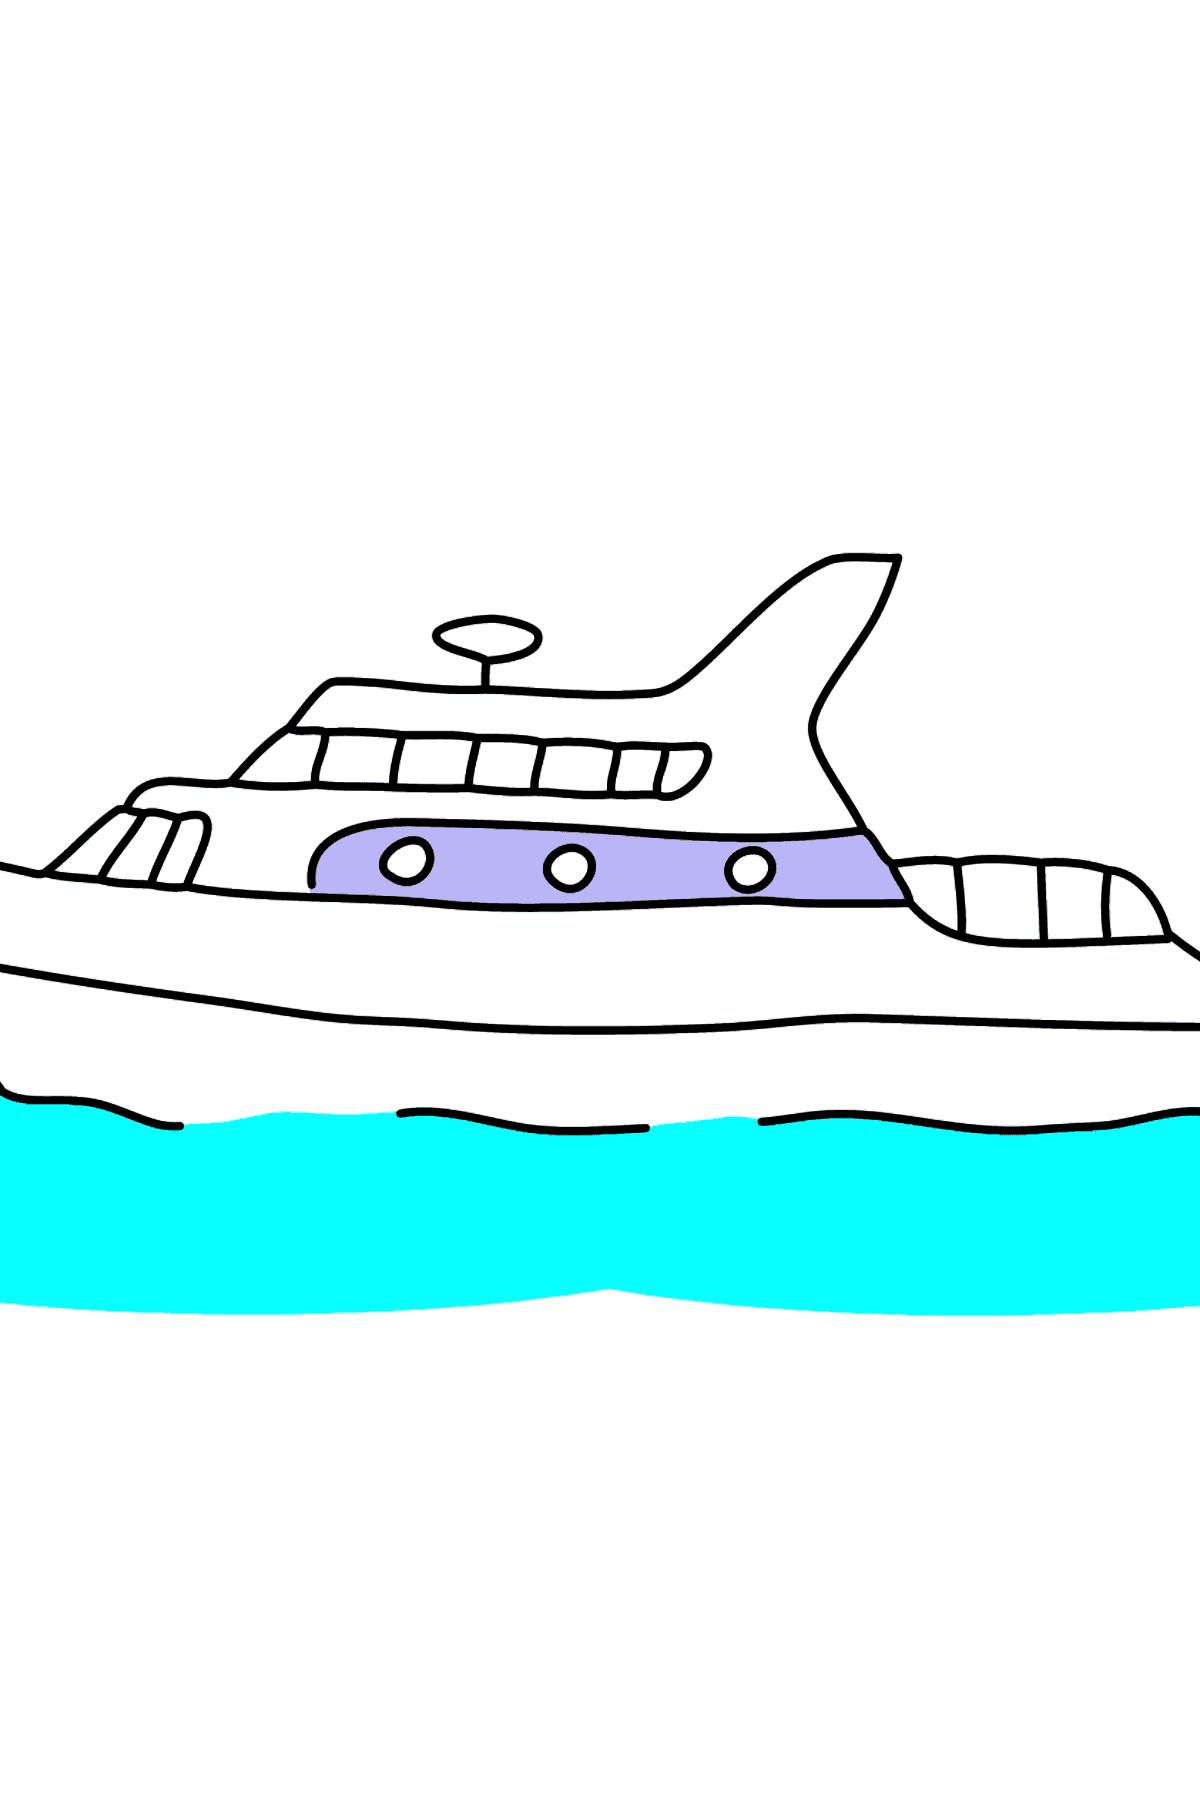 Раскраска прогулочная яхта - Картинки для Детей